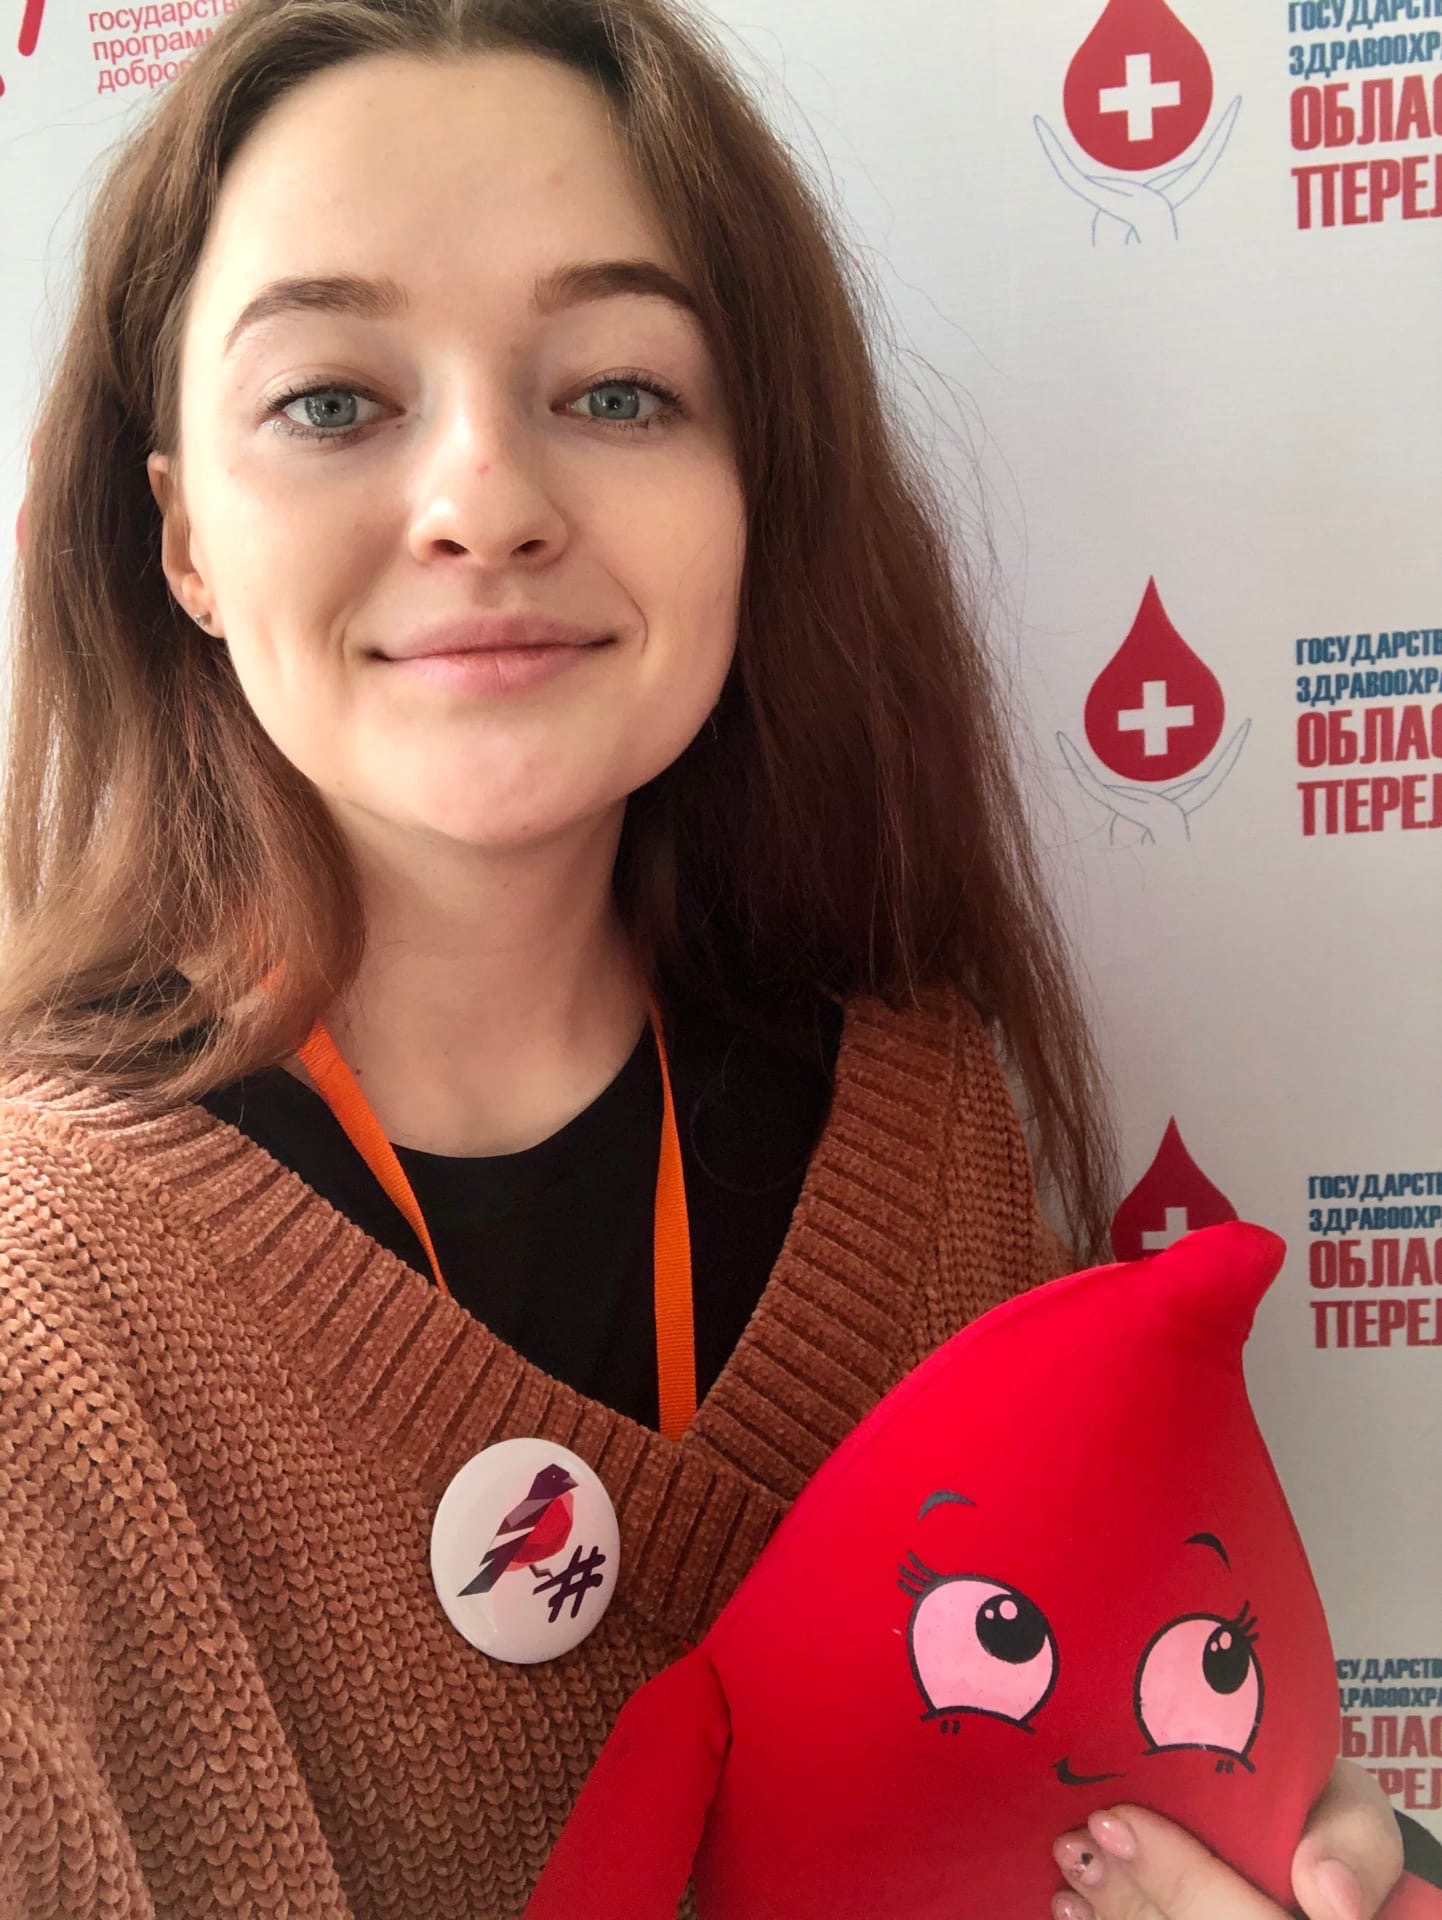 В Национальный день донора владимирцы рассказали о своем опытом сдачи крови, ощущениях перед процедурой и после, и, конечно, о том, каково это, когда твоя кровь спасает чью-то жизнь.